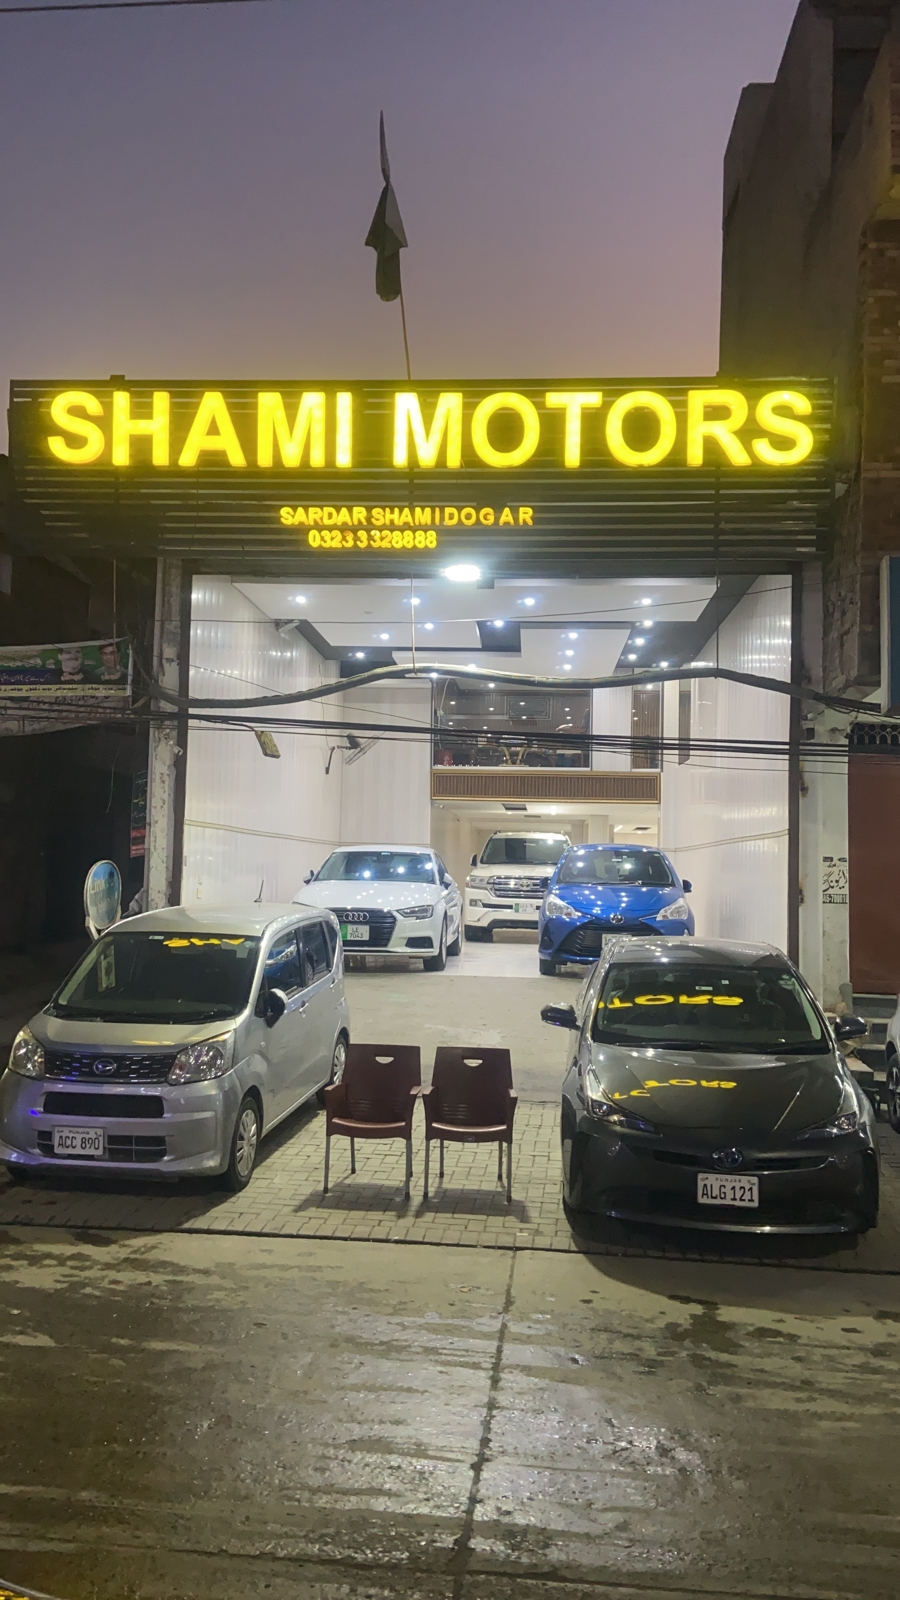 Shami Motors